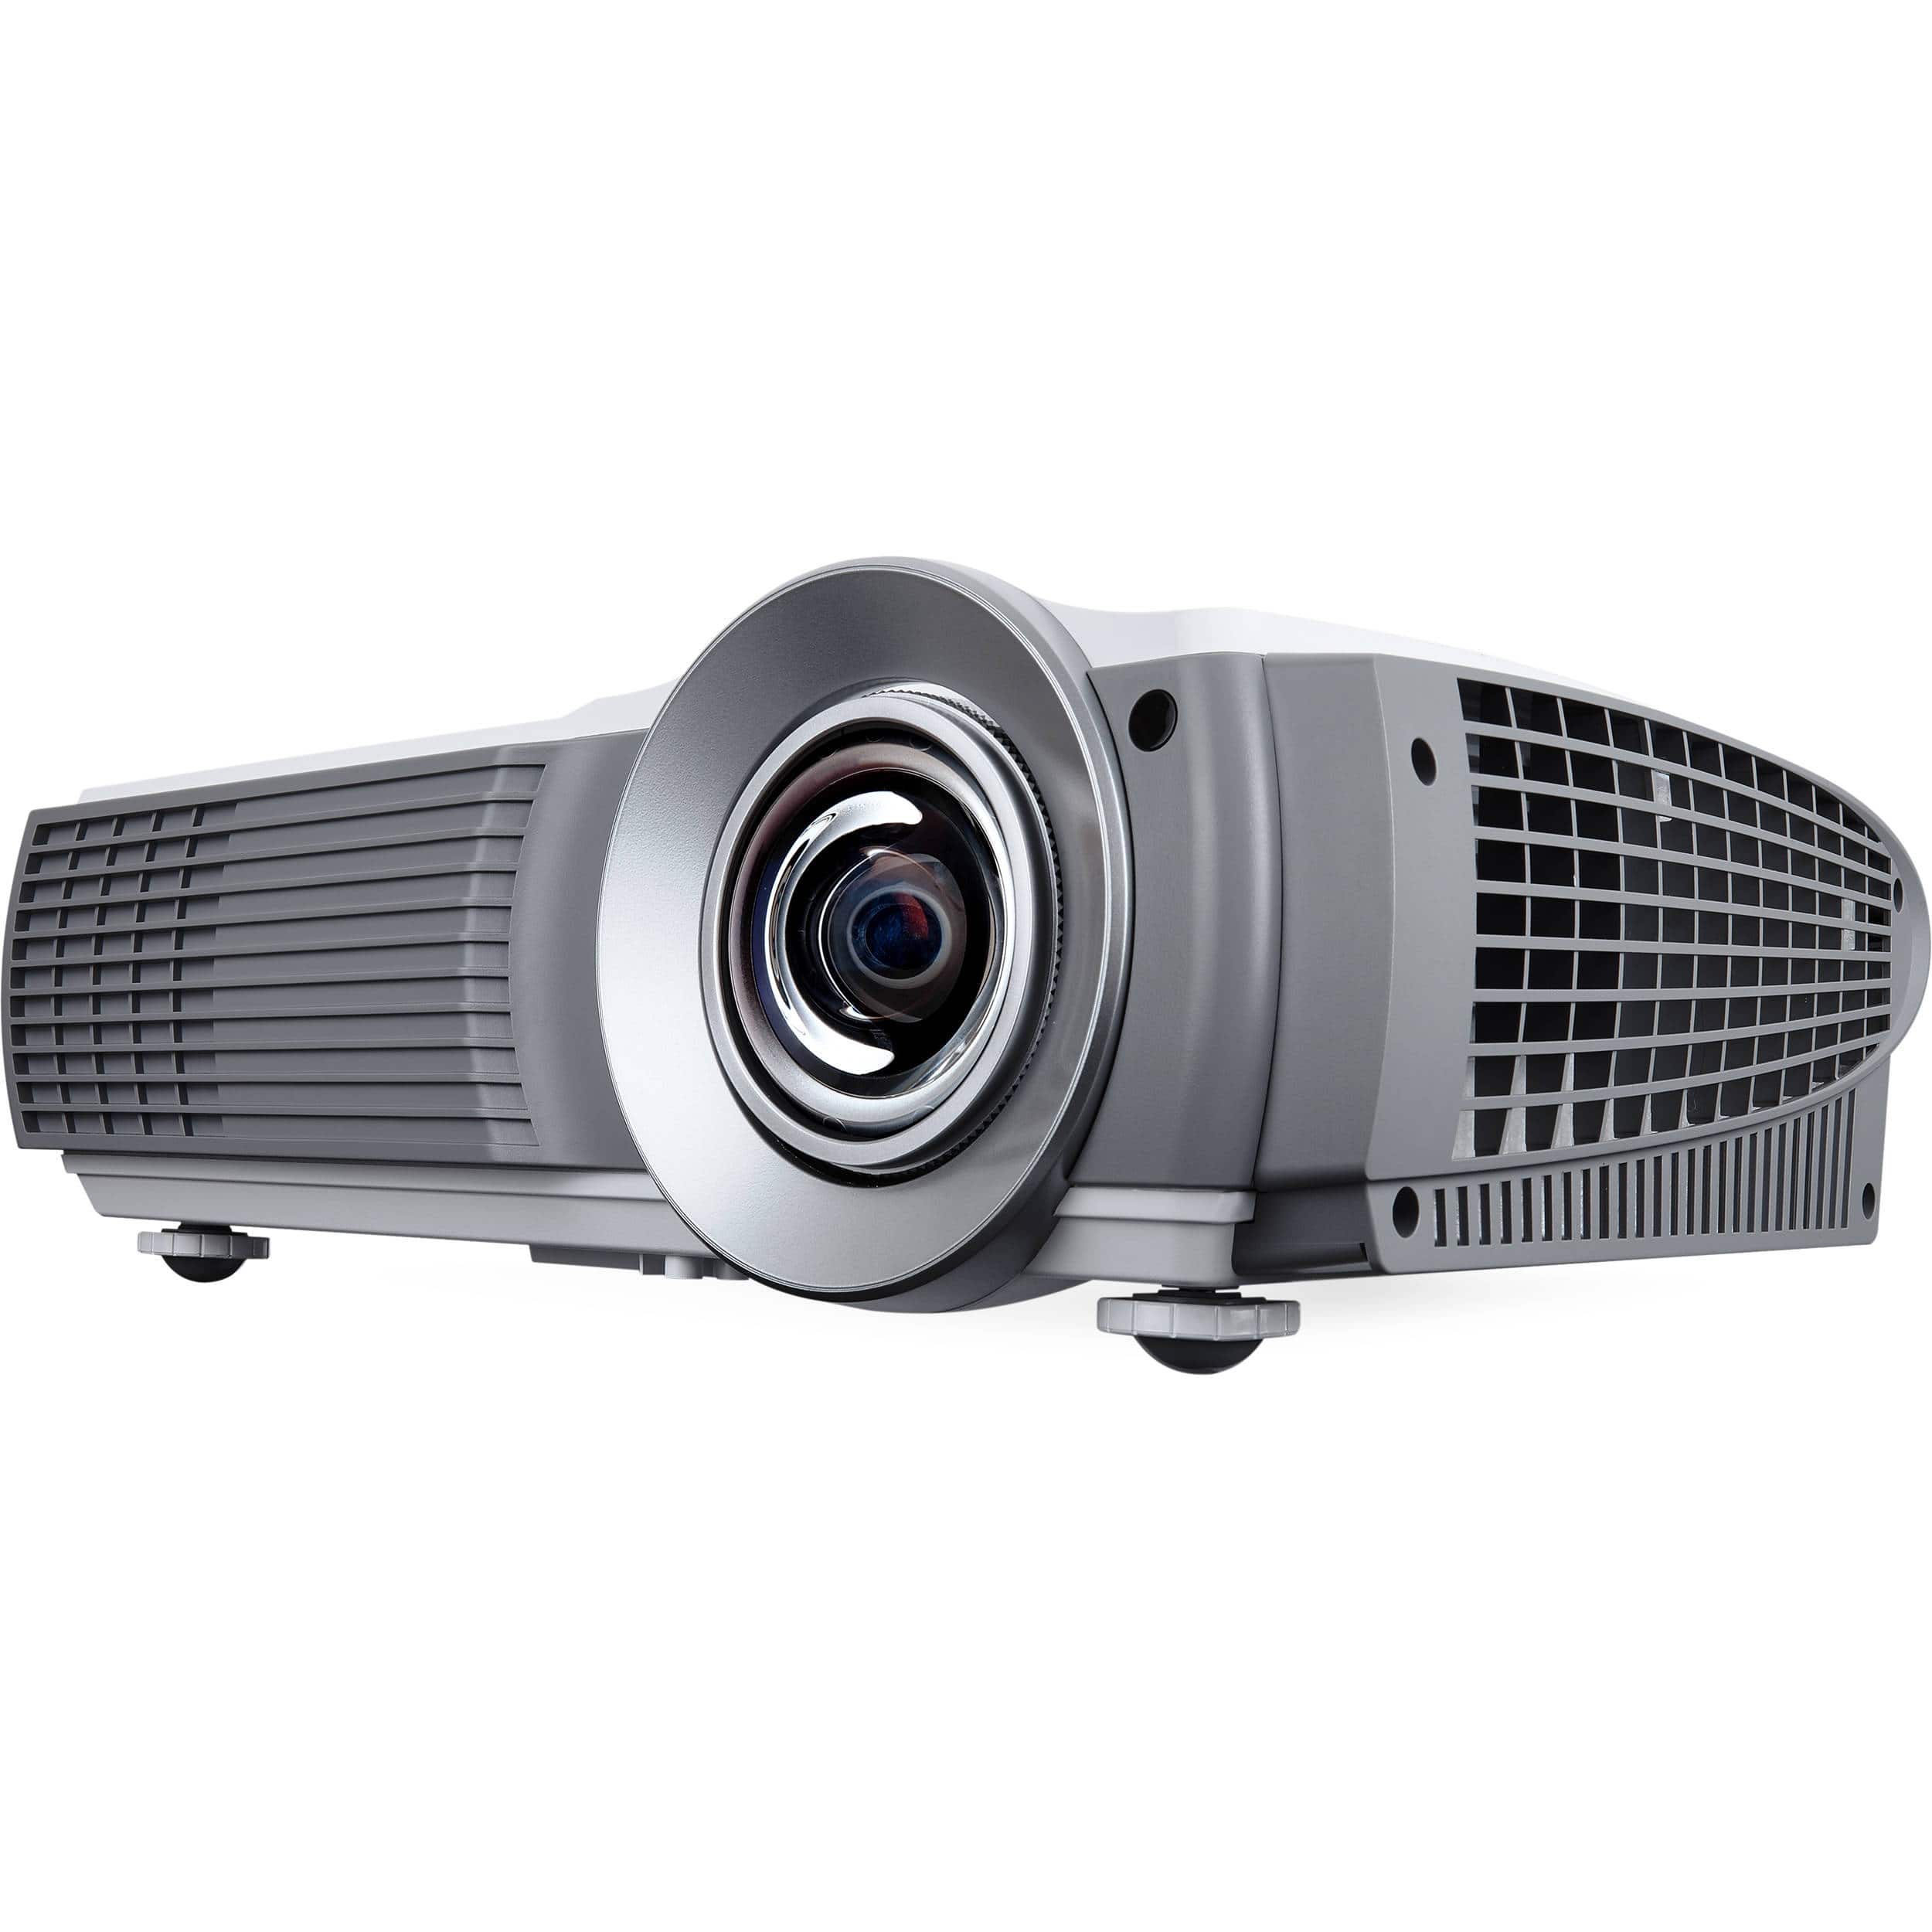 ViewSonic LS620X-R 1024x768 XGA Projector - Certified Refurbished